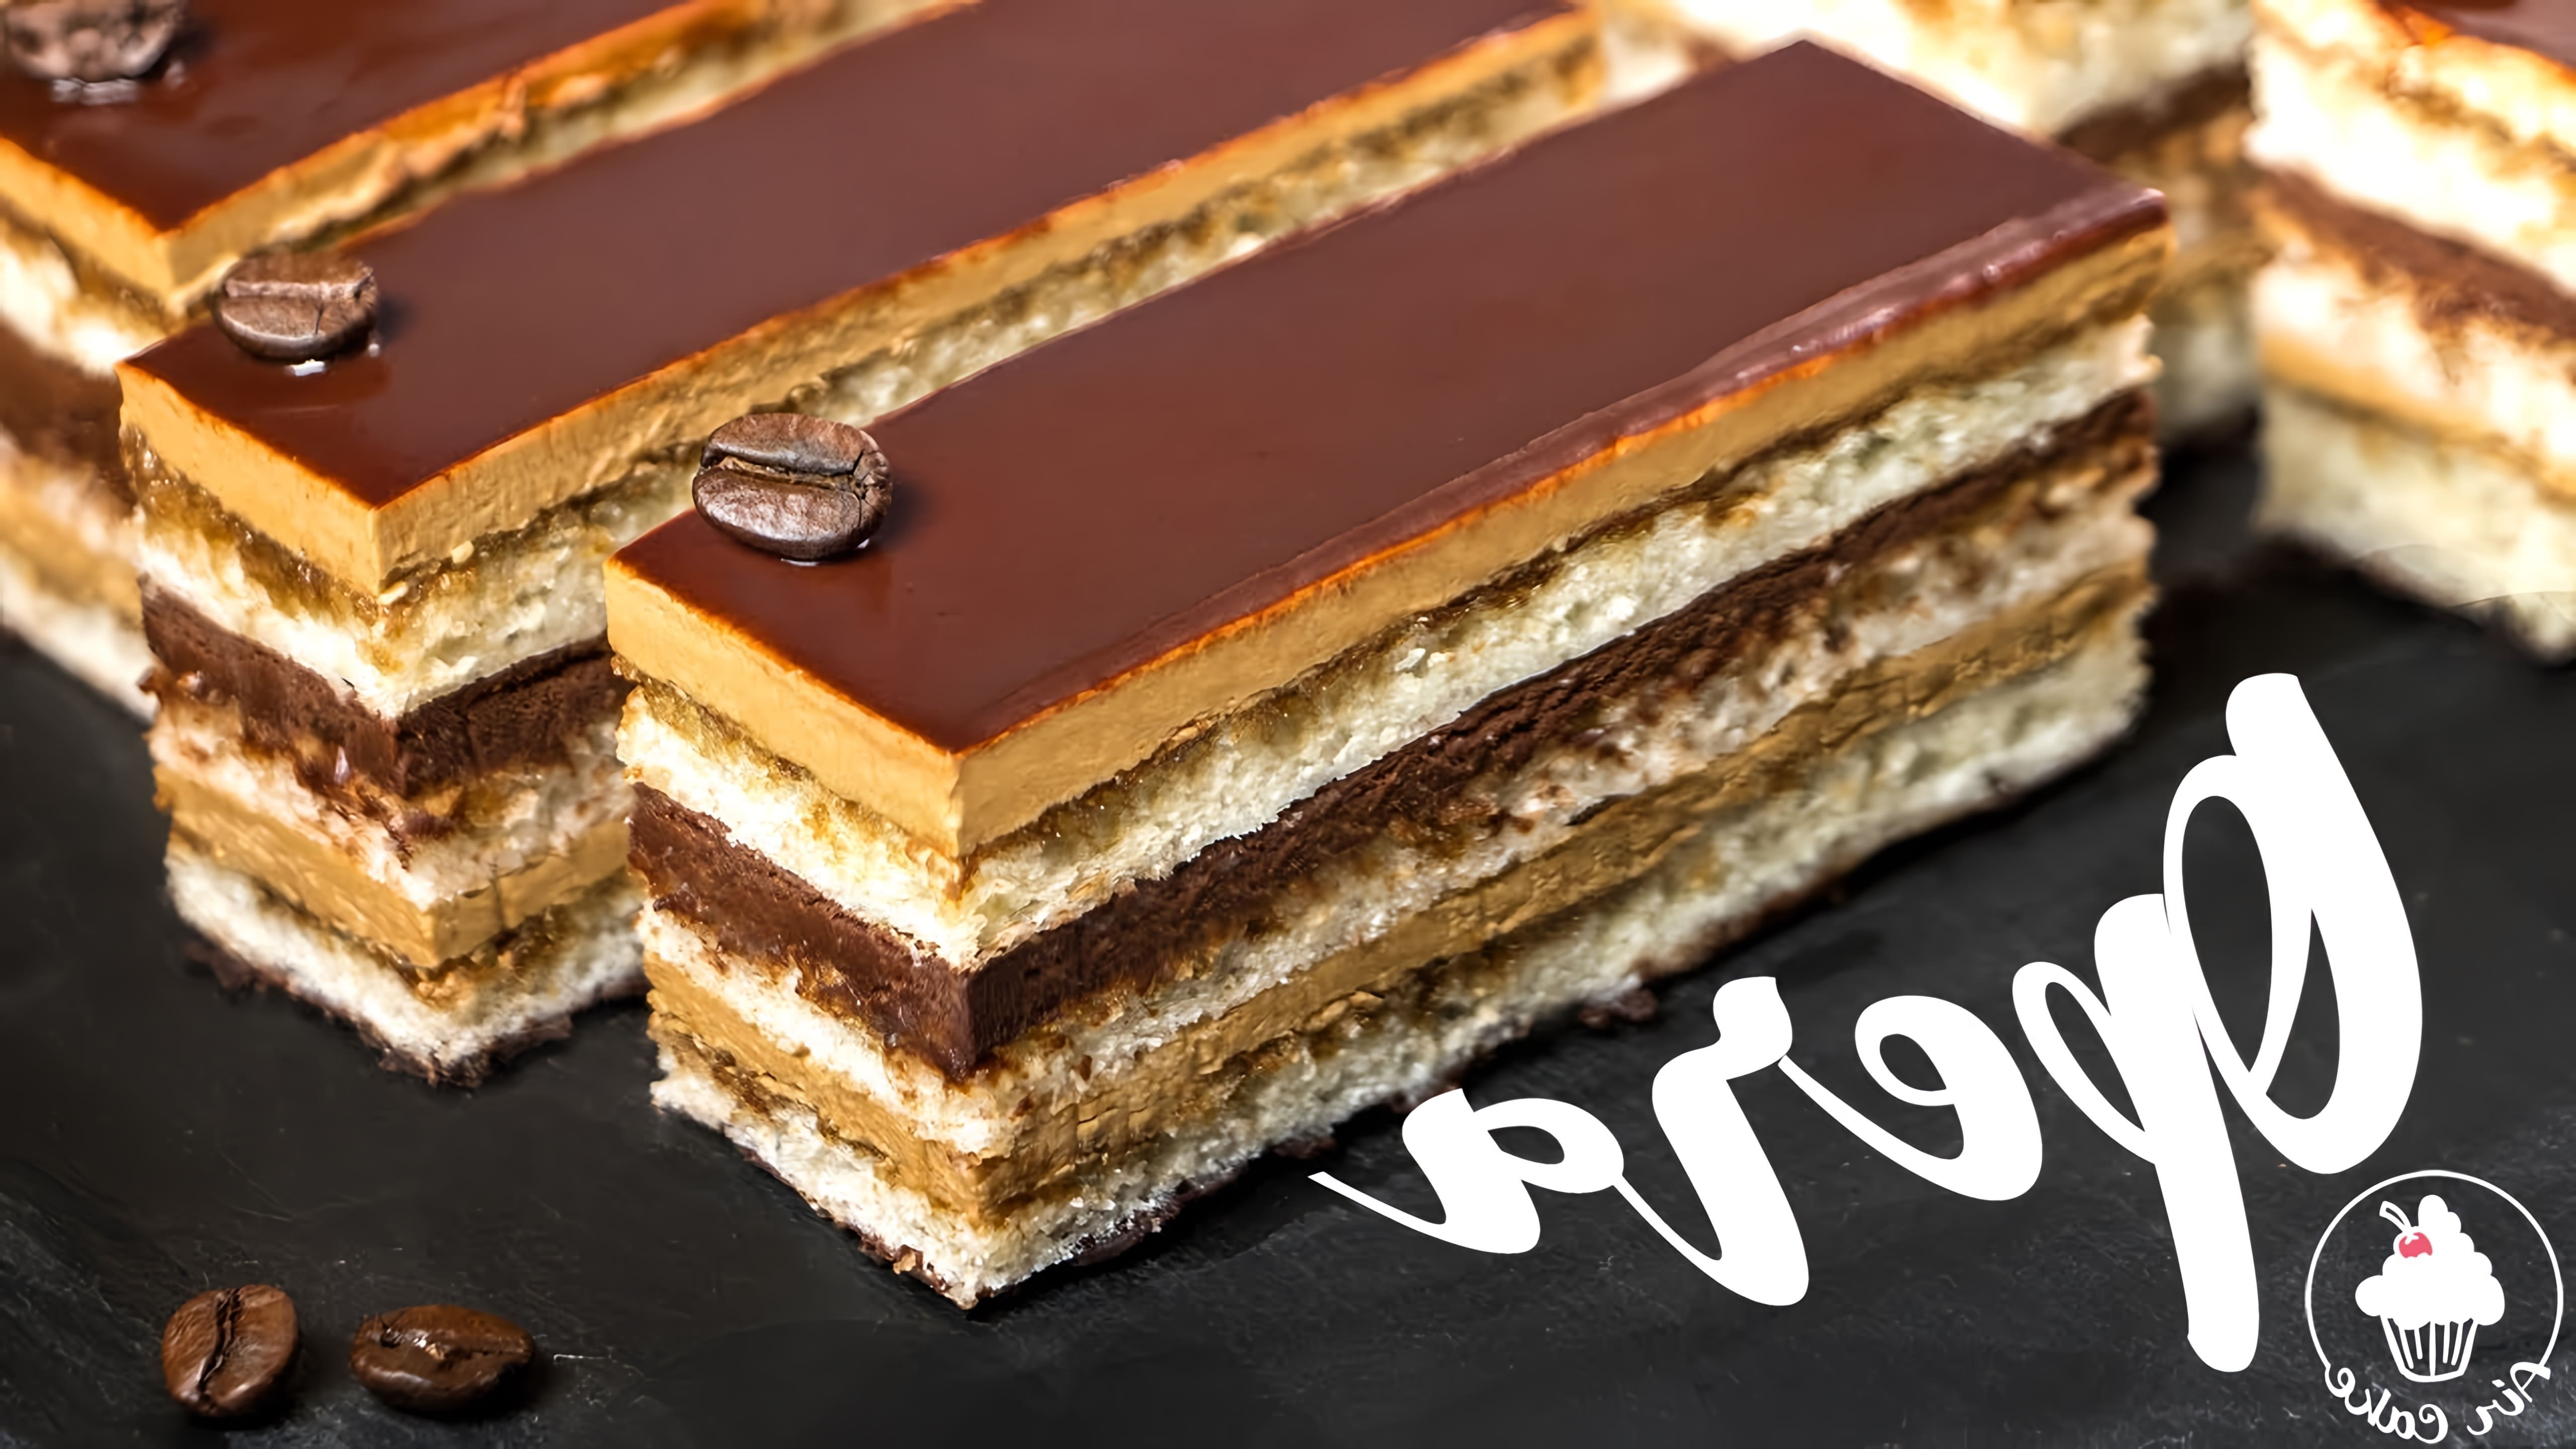 В этом видео представлен рецепт торта "Опера", который является легендарным французским десертом